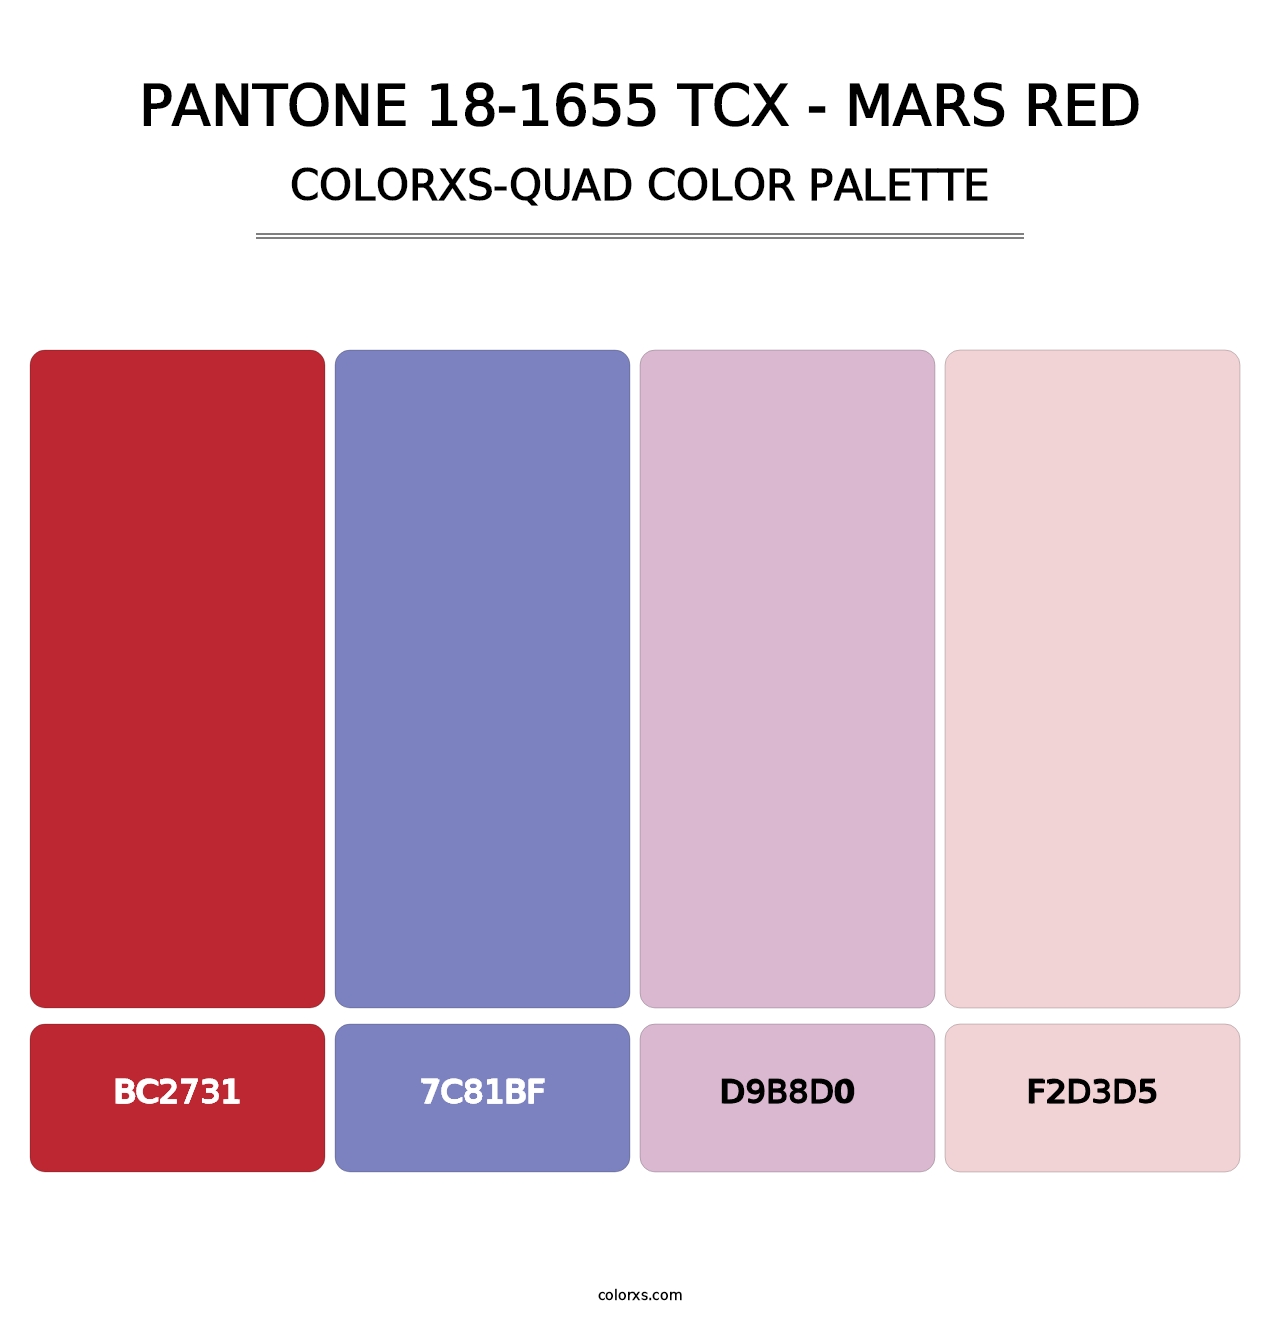 PANTONE 18-1655 TCX - Mars Red - Colorxs Quad Palette